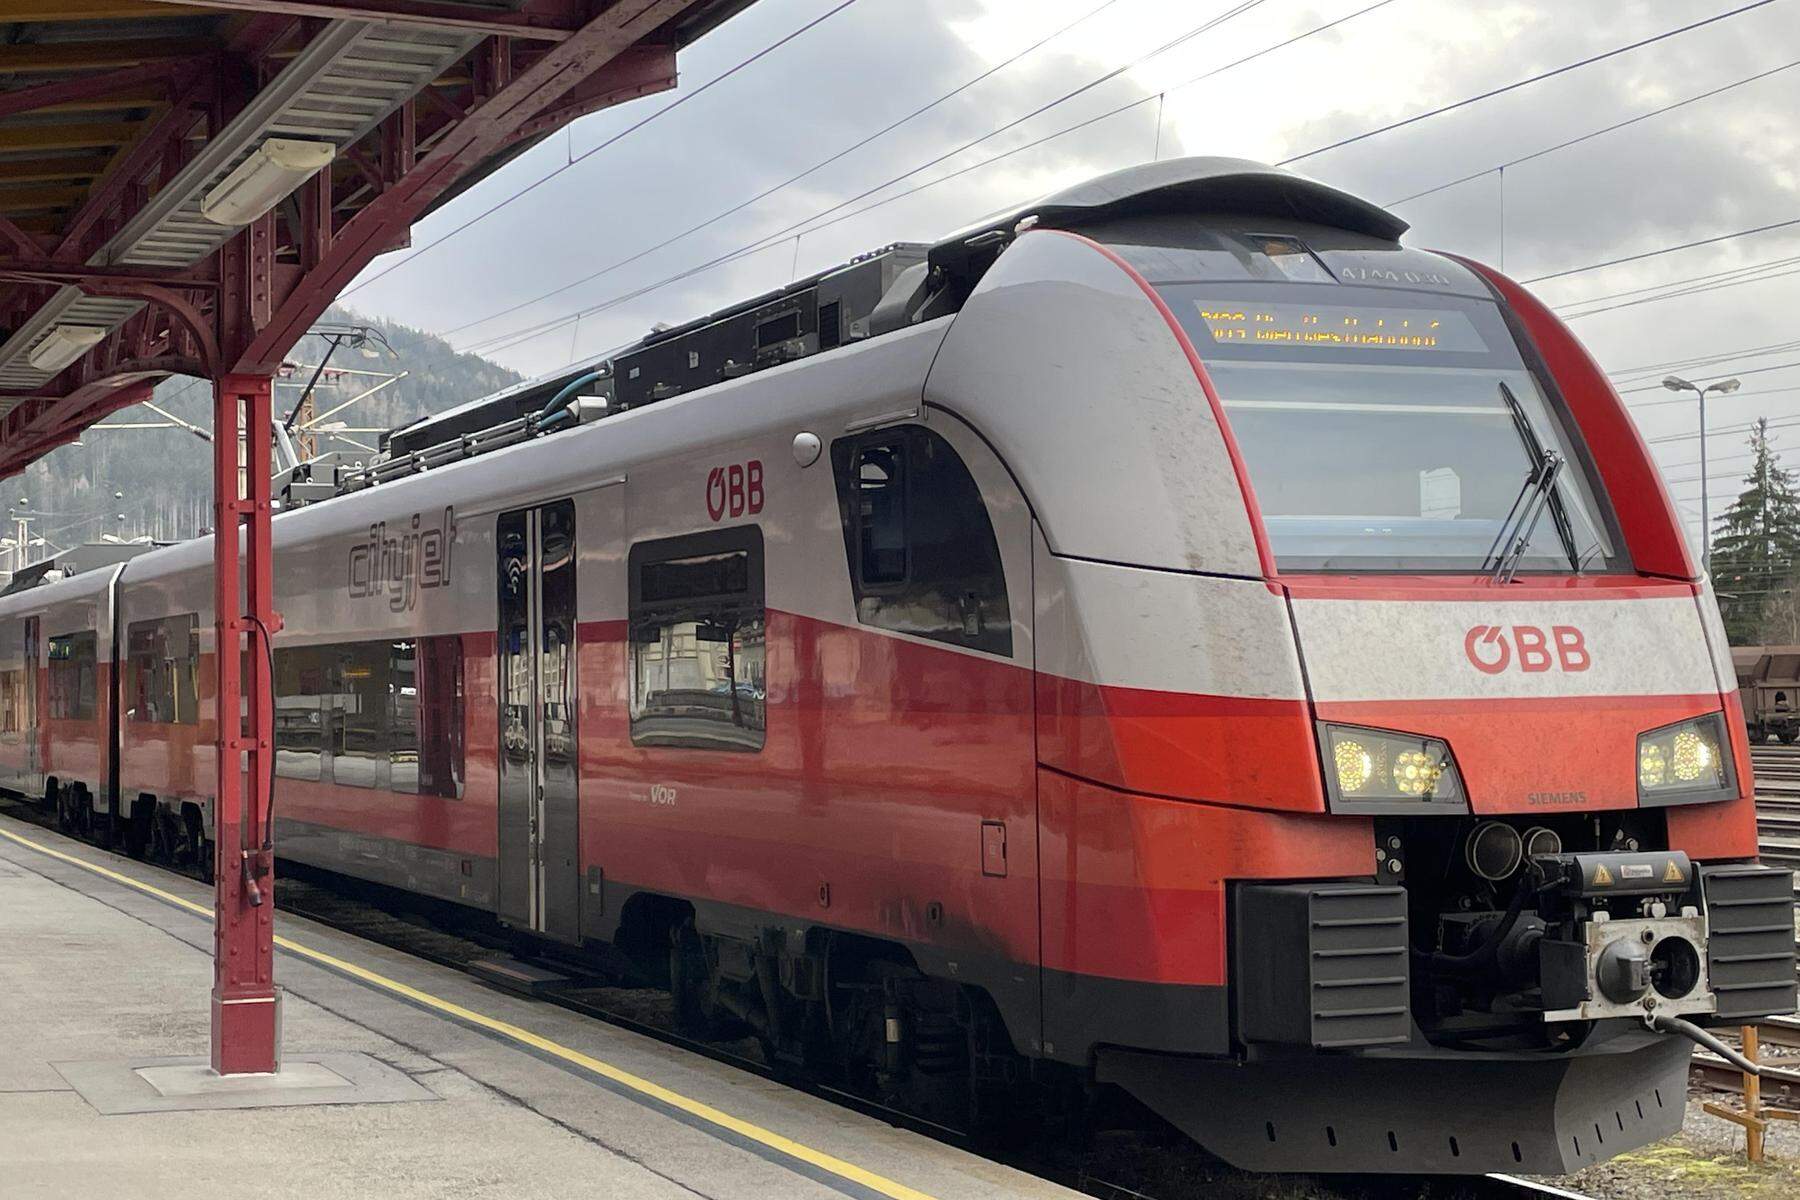 Debatte um Gesäusebahn | „Neue Chance für den Bahnverkehr nach Admont“